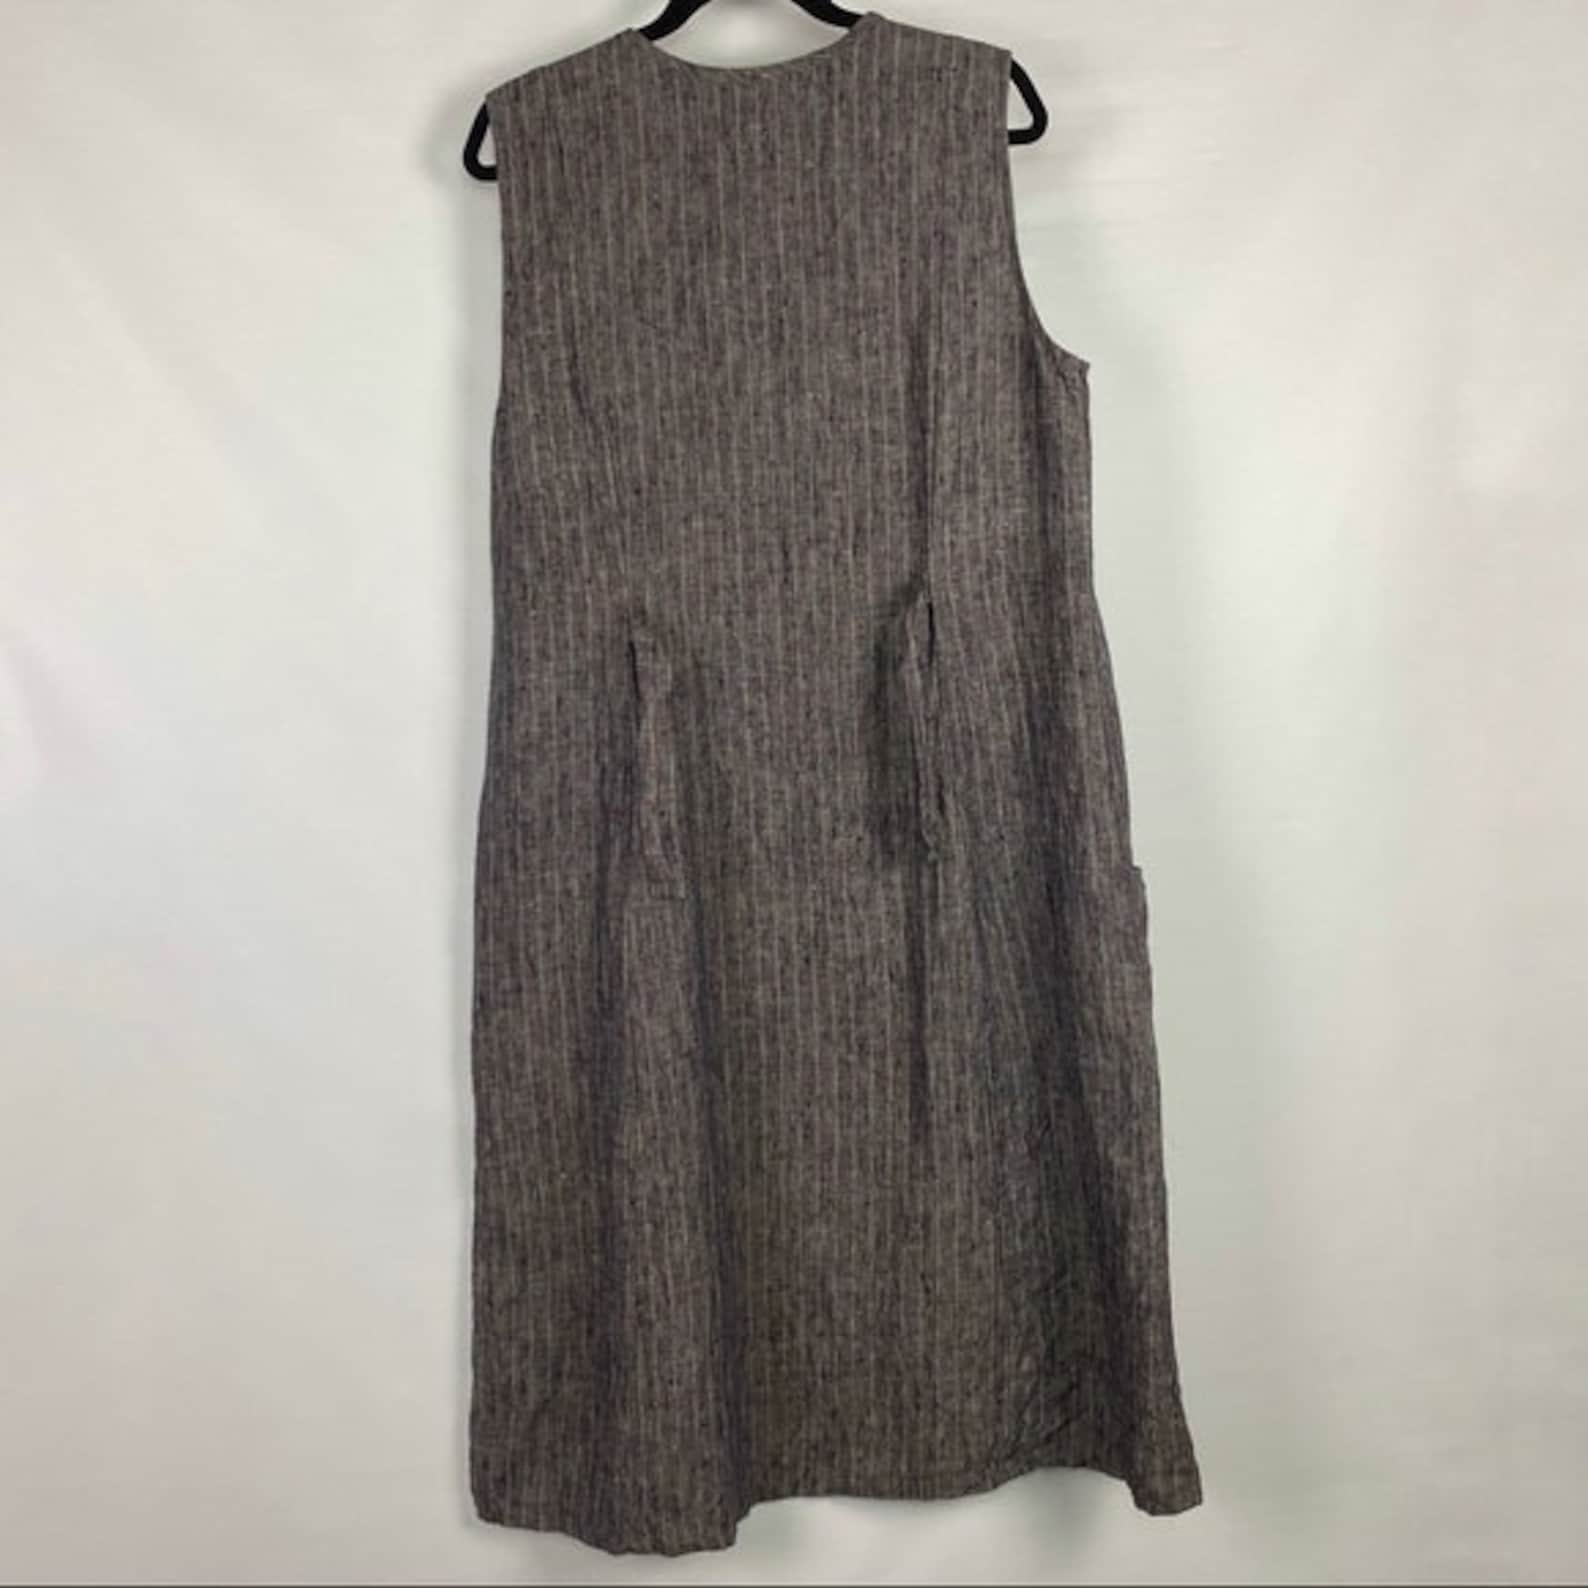 Vintage 90s Flax by Jeanne Engelhart 100% Linen dress | Etsy